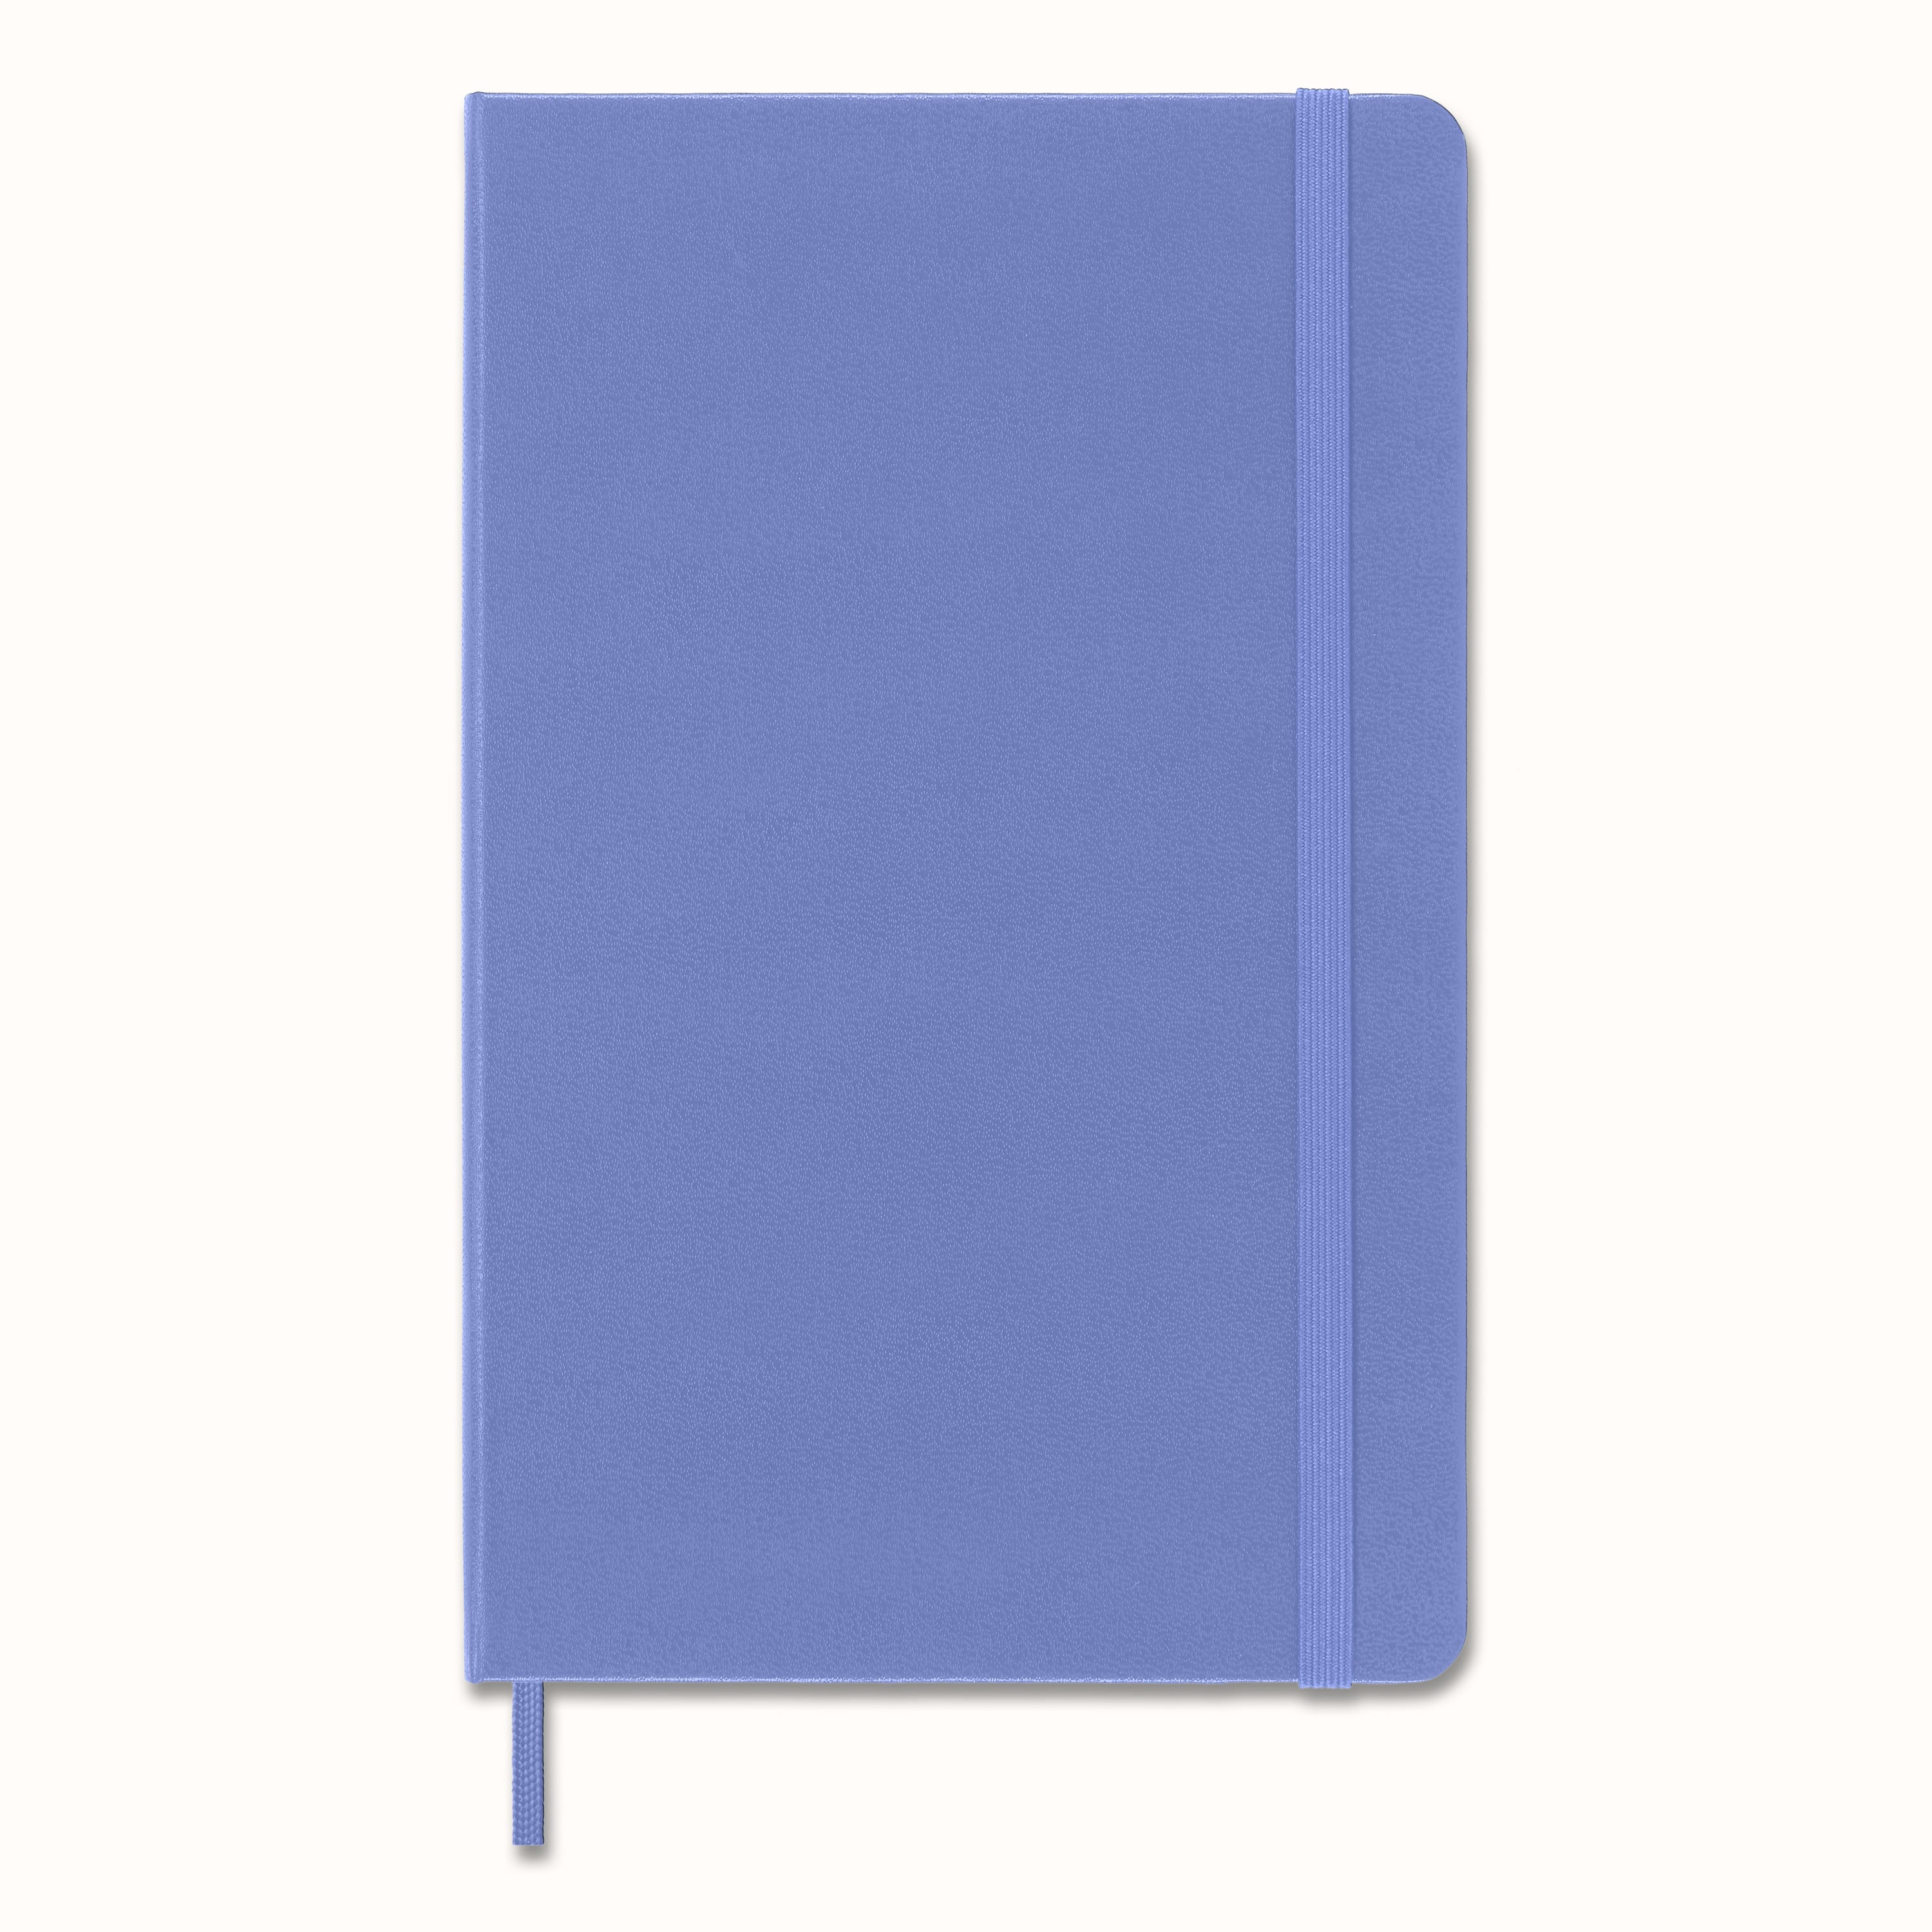 Moleskine® Hard Cover Large Sketchbook